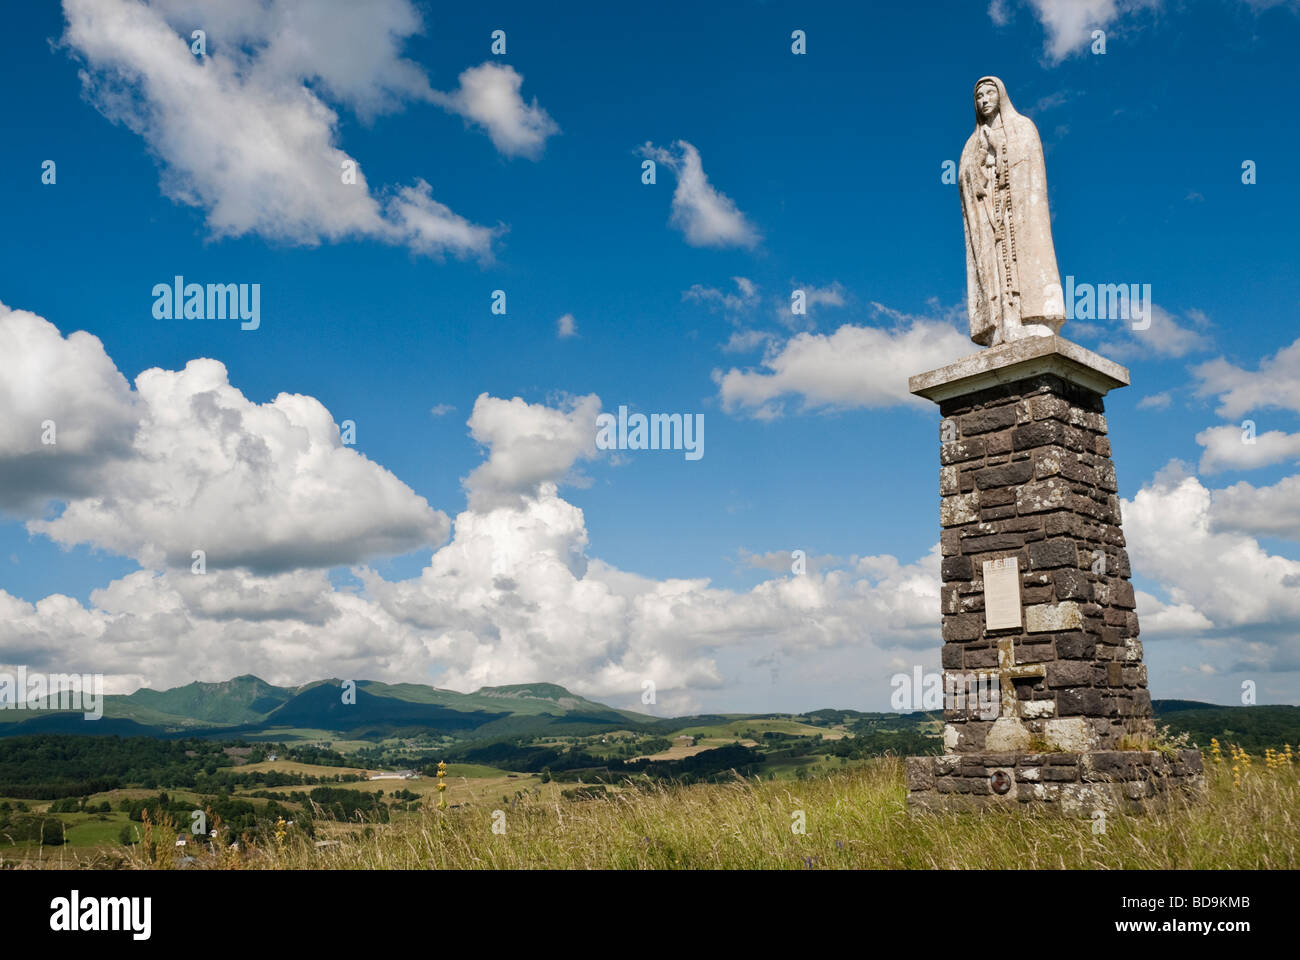 Statue of La Vierge de Fatima St Donat Auvergne with view of the Massif de Sancy Auvergne France Stock Photo